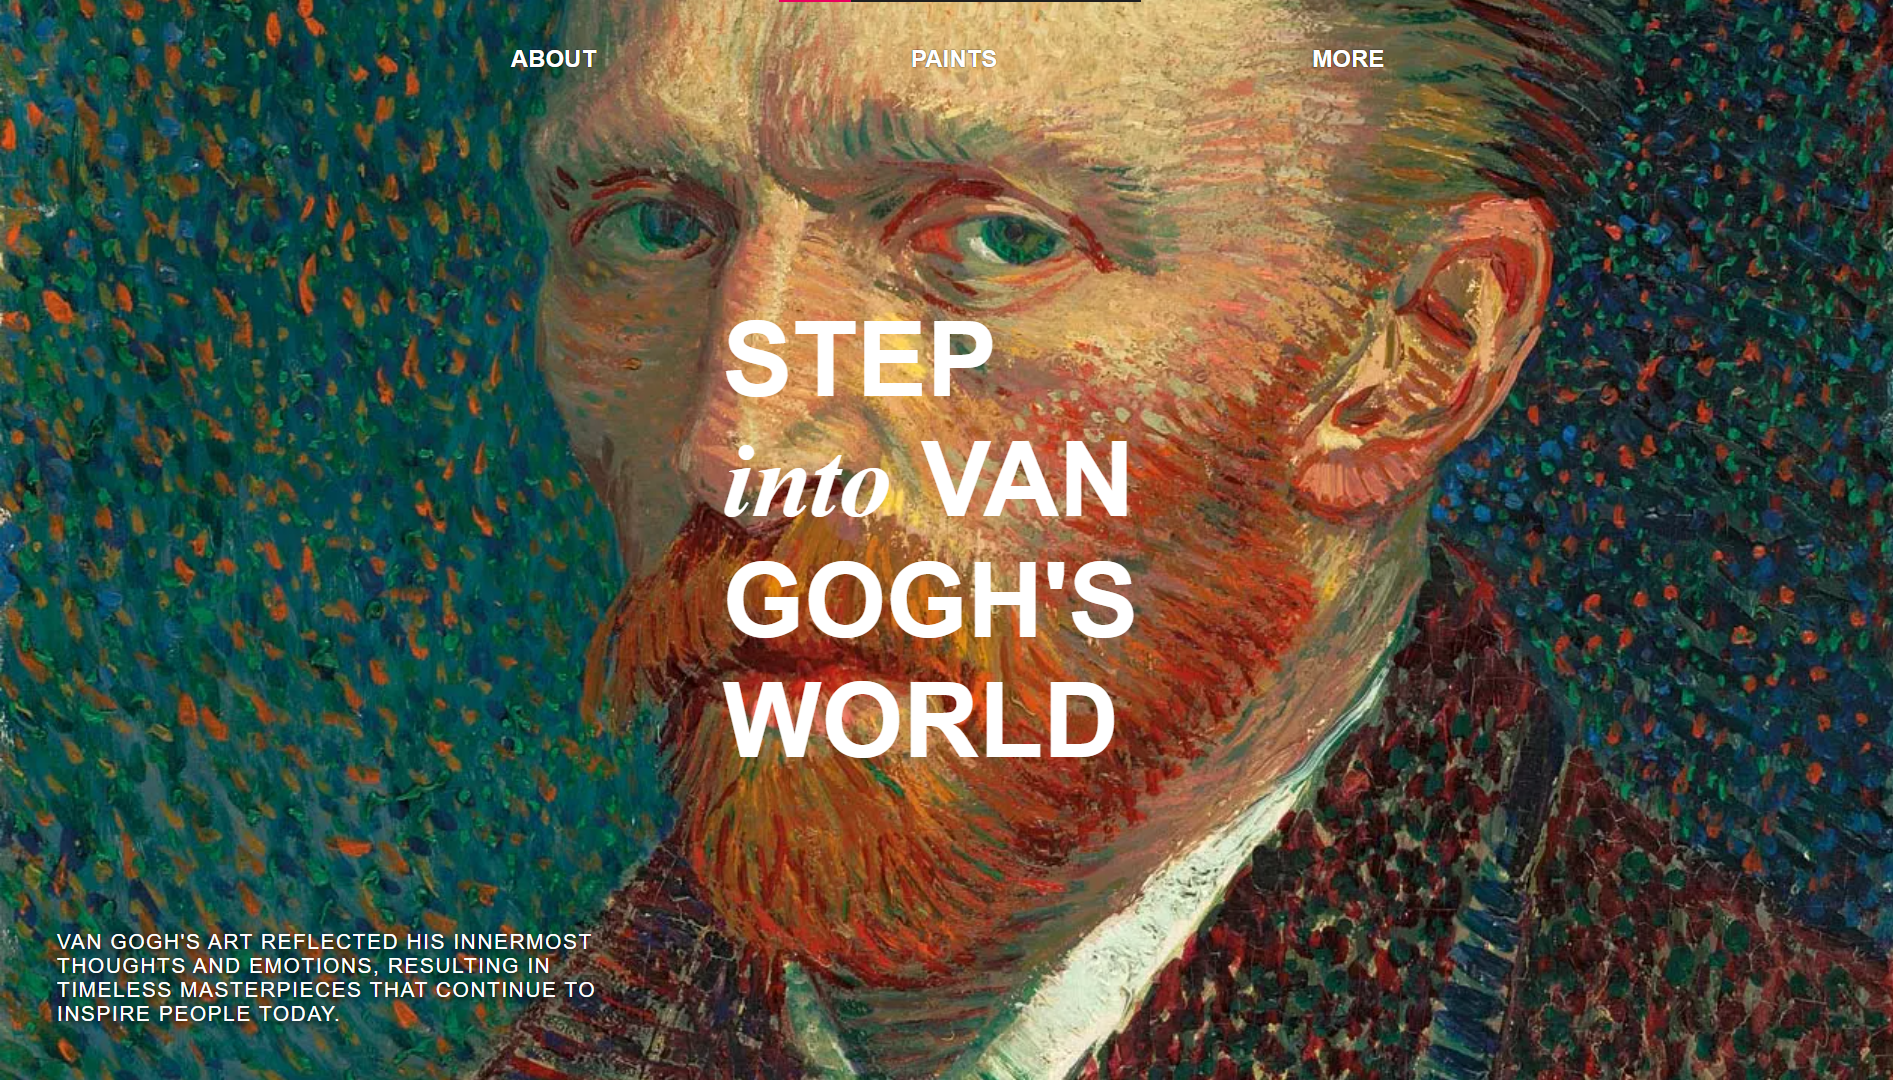 Vincent van Gogh: A Tribute Website